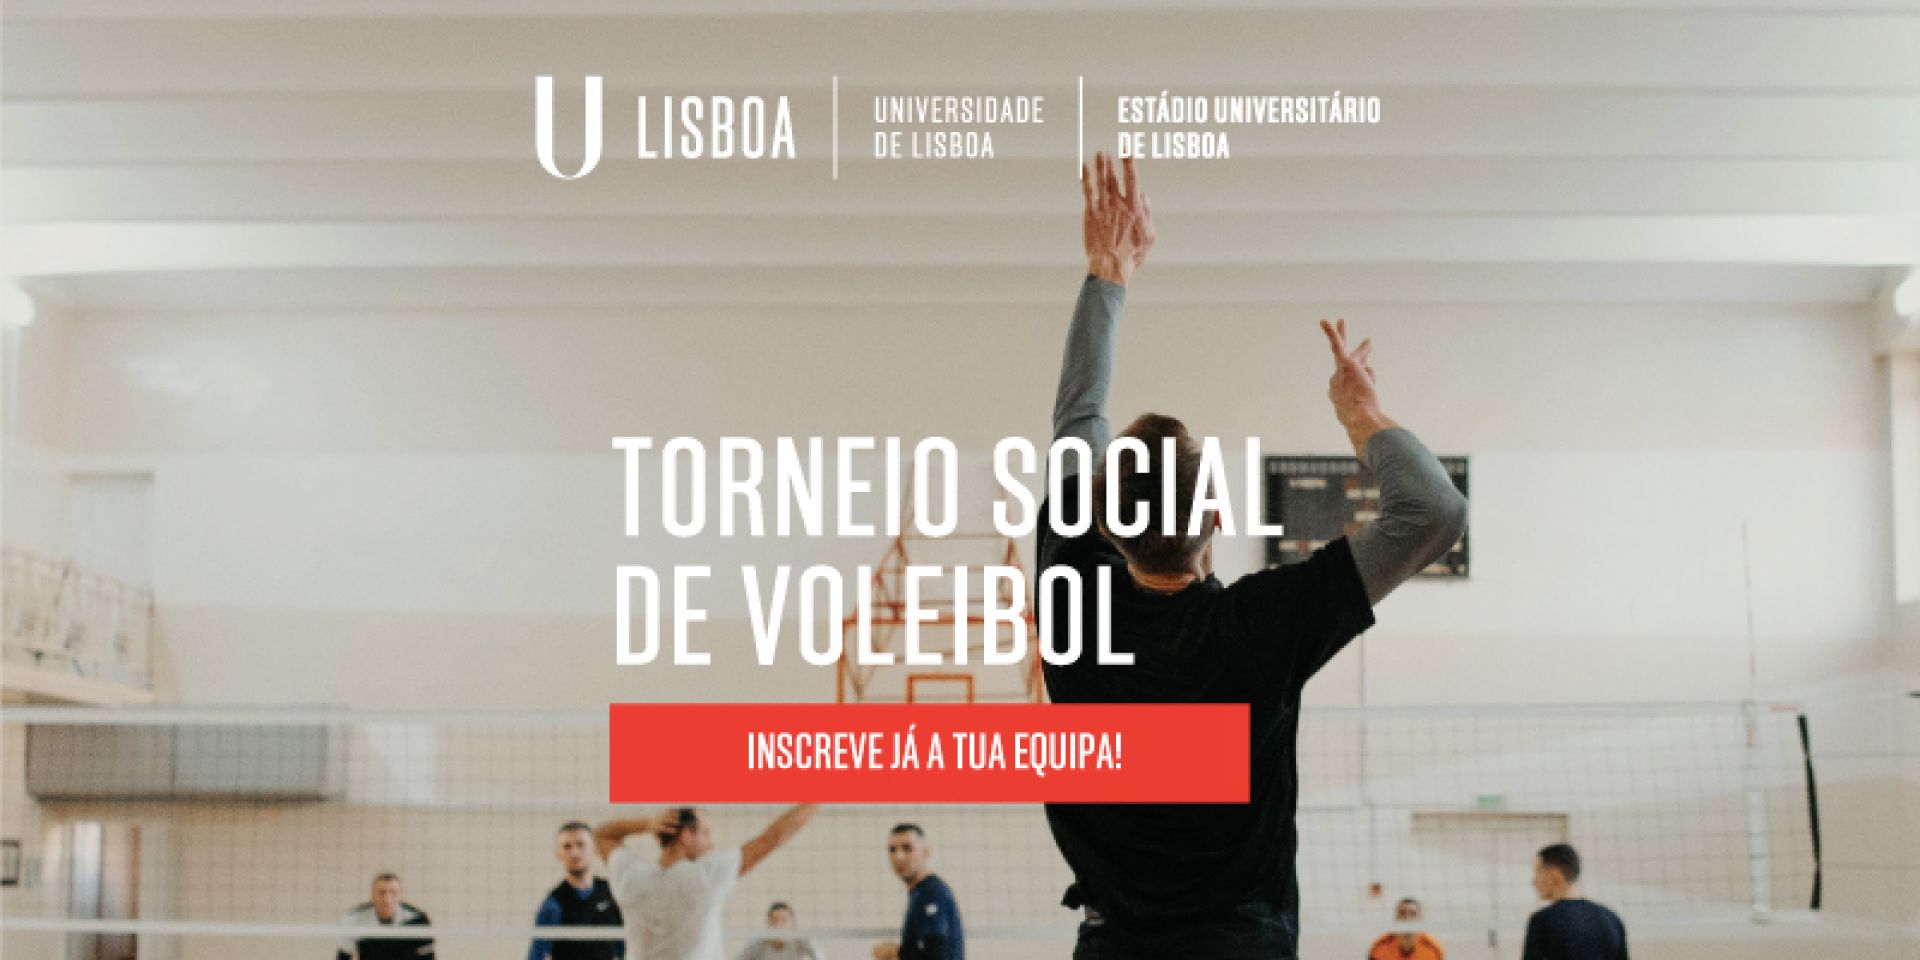 Torneios Sociais de Voleibol no Estádio Universitário